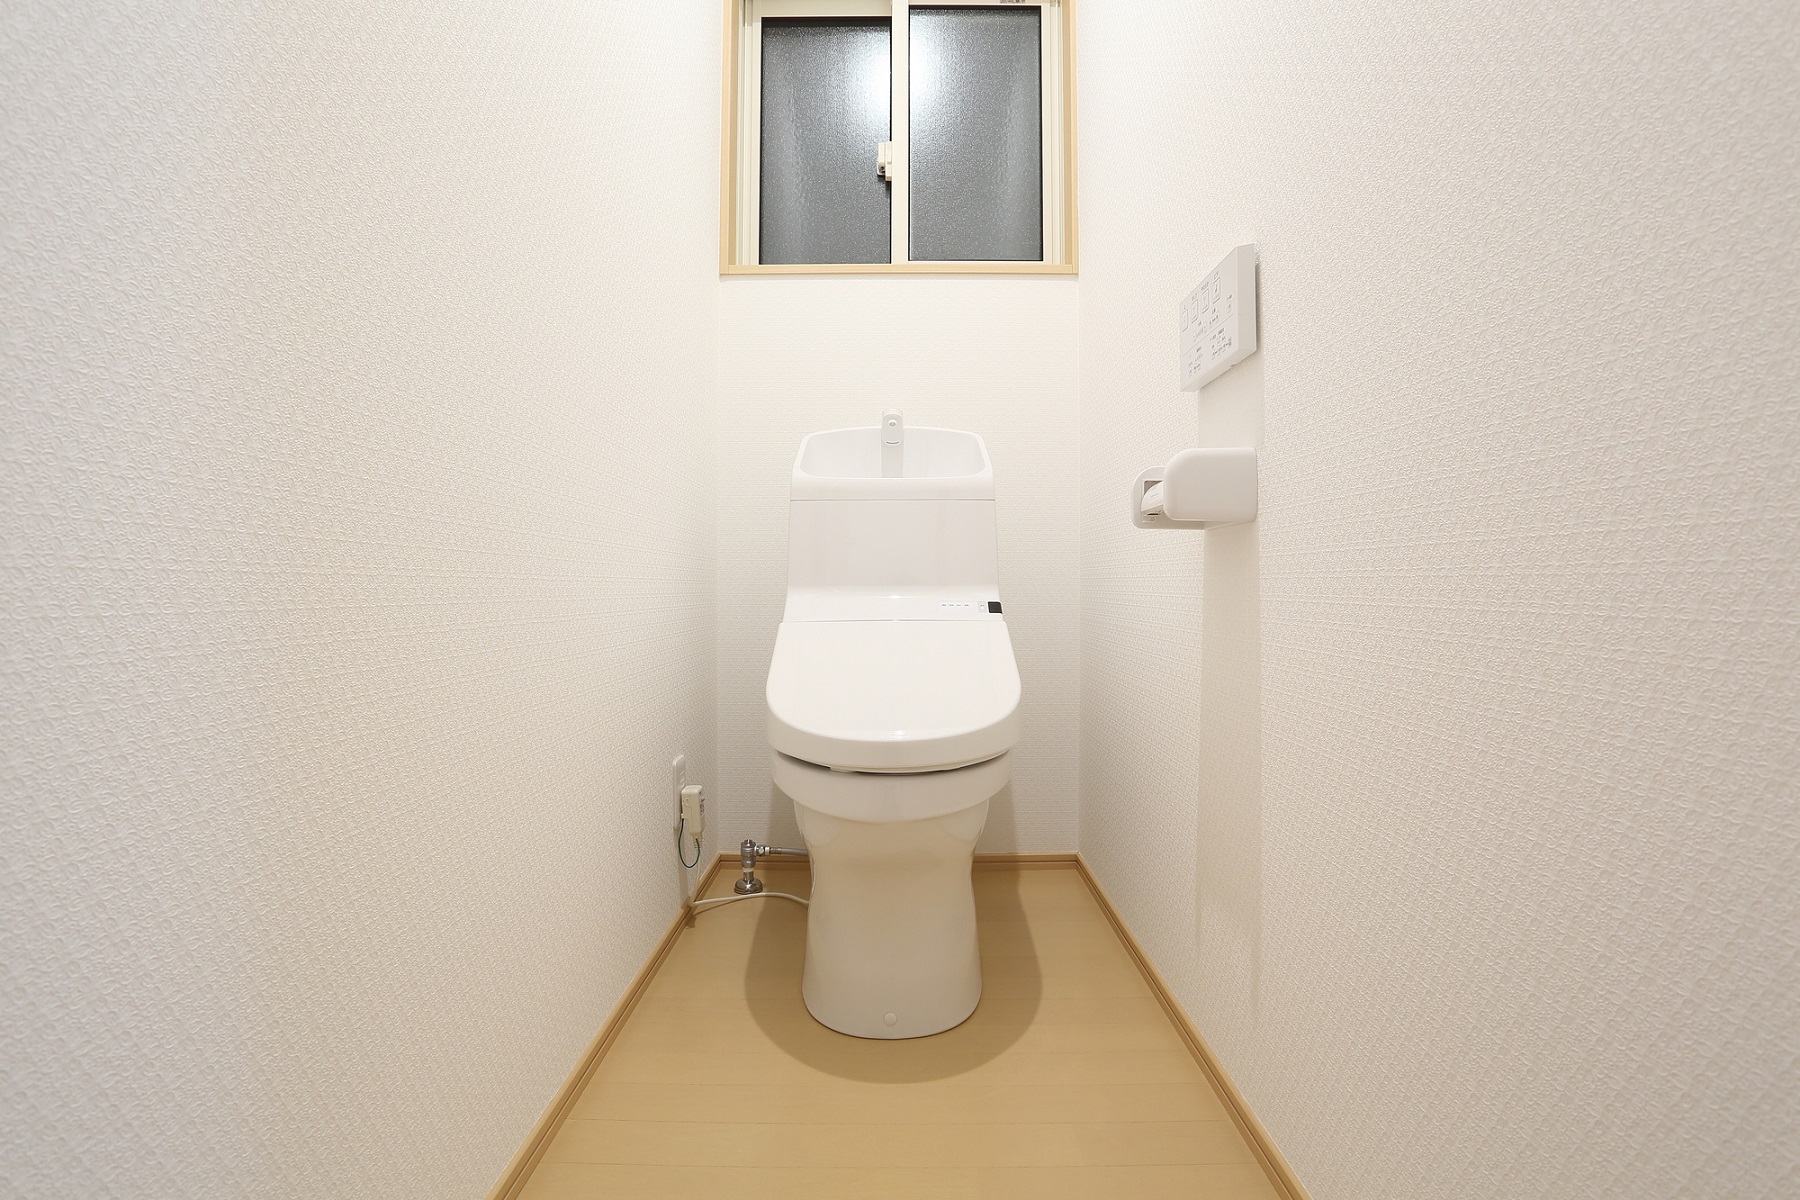 【ベストセレクション】 新築 トイレ 画像 トップ画像壁紙アニメ